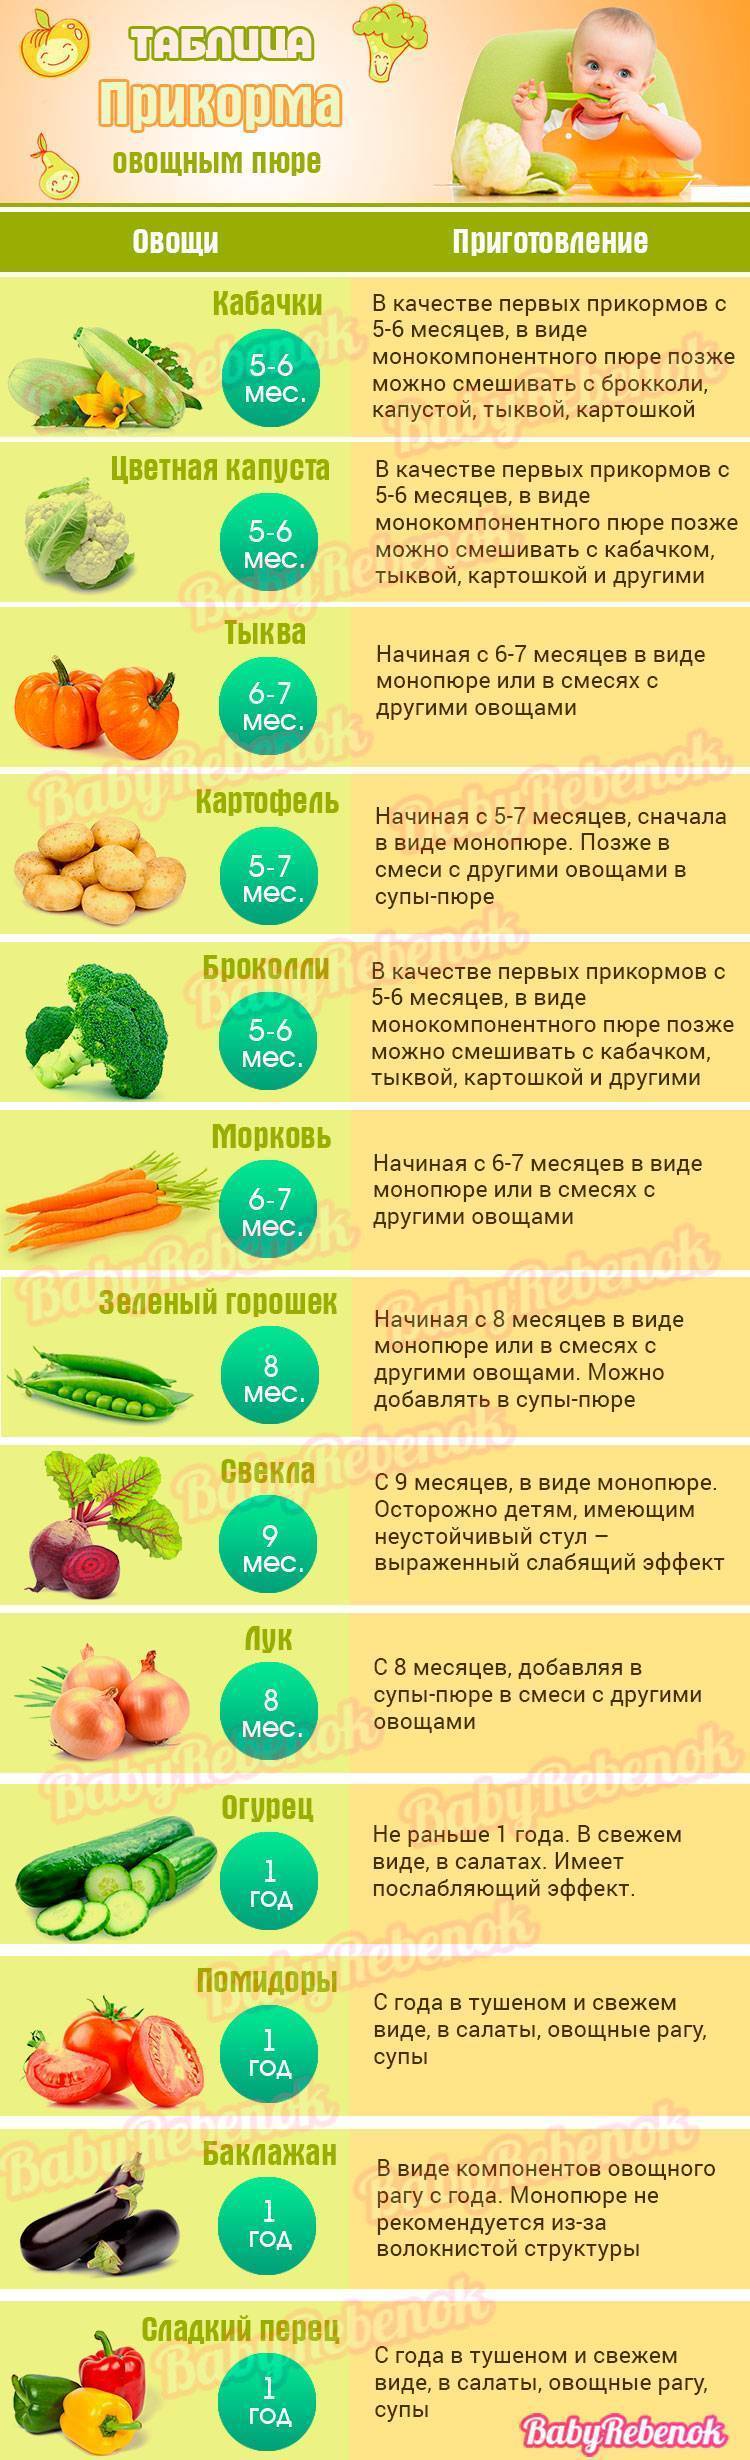 Прикорм овощи | какие овощи можно использовать в качестве прикорма